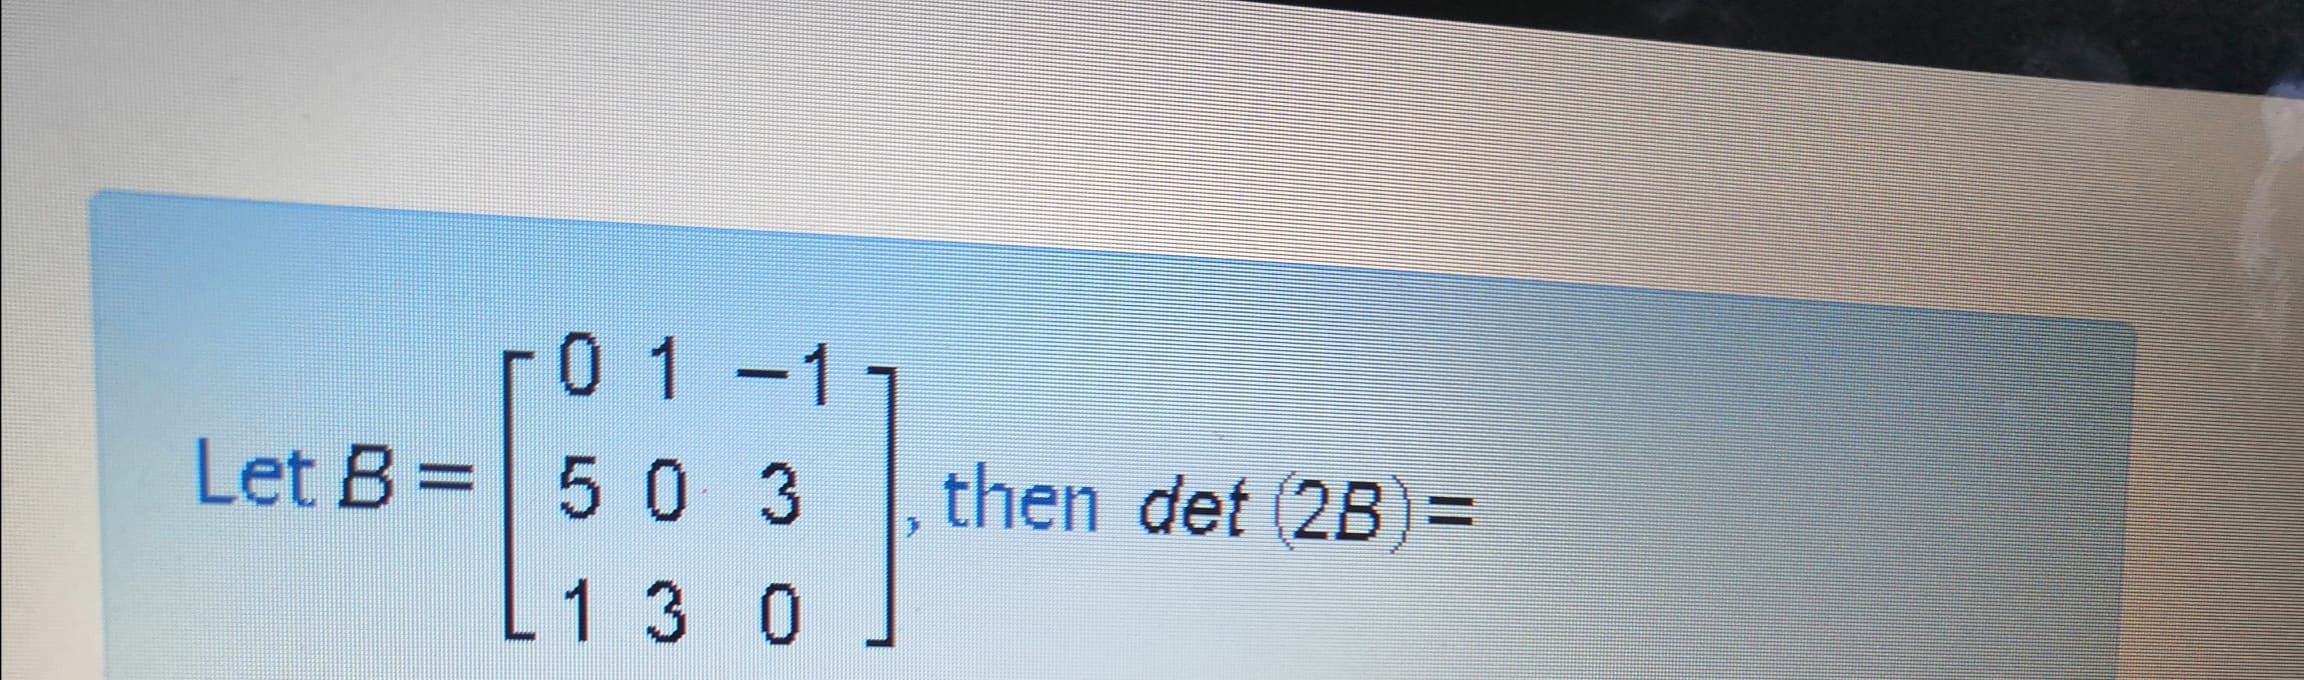 r0 1-11
|
Let B= 5 0 3
then det (2B)=
%3D
L1 3 0
